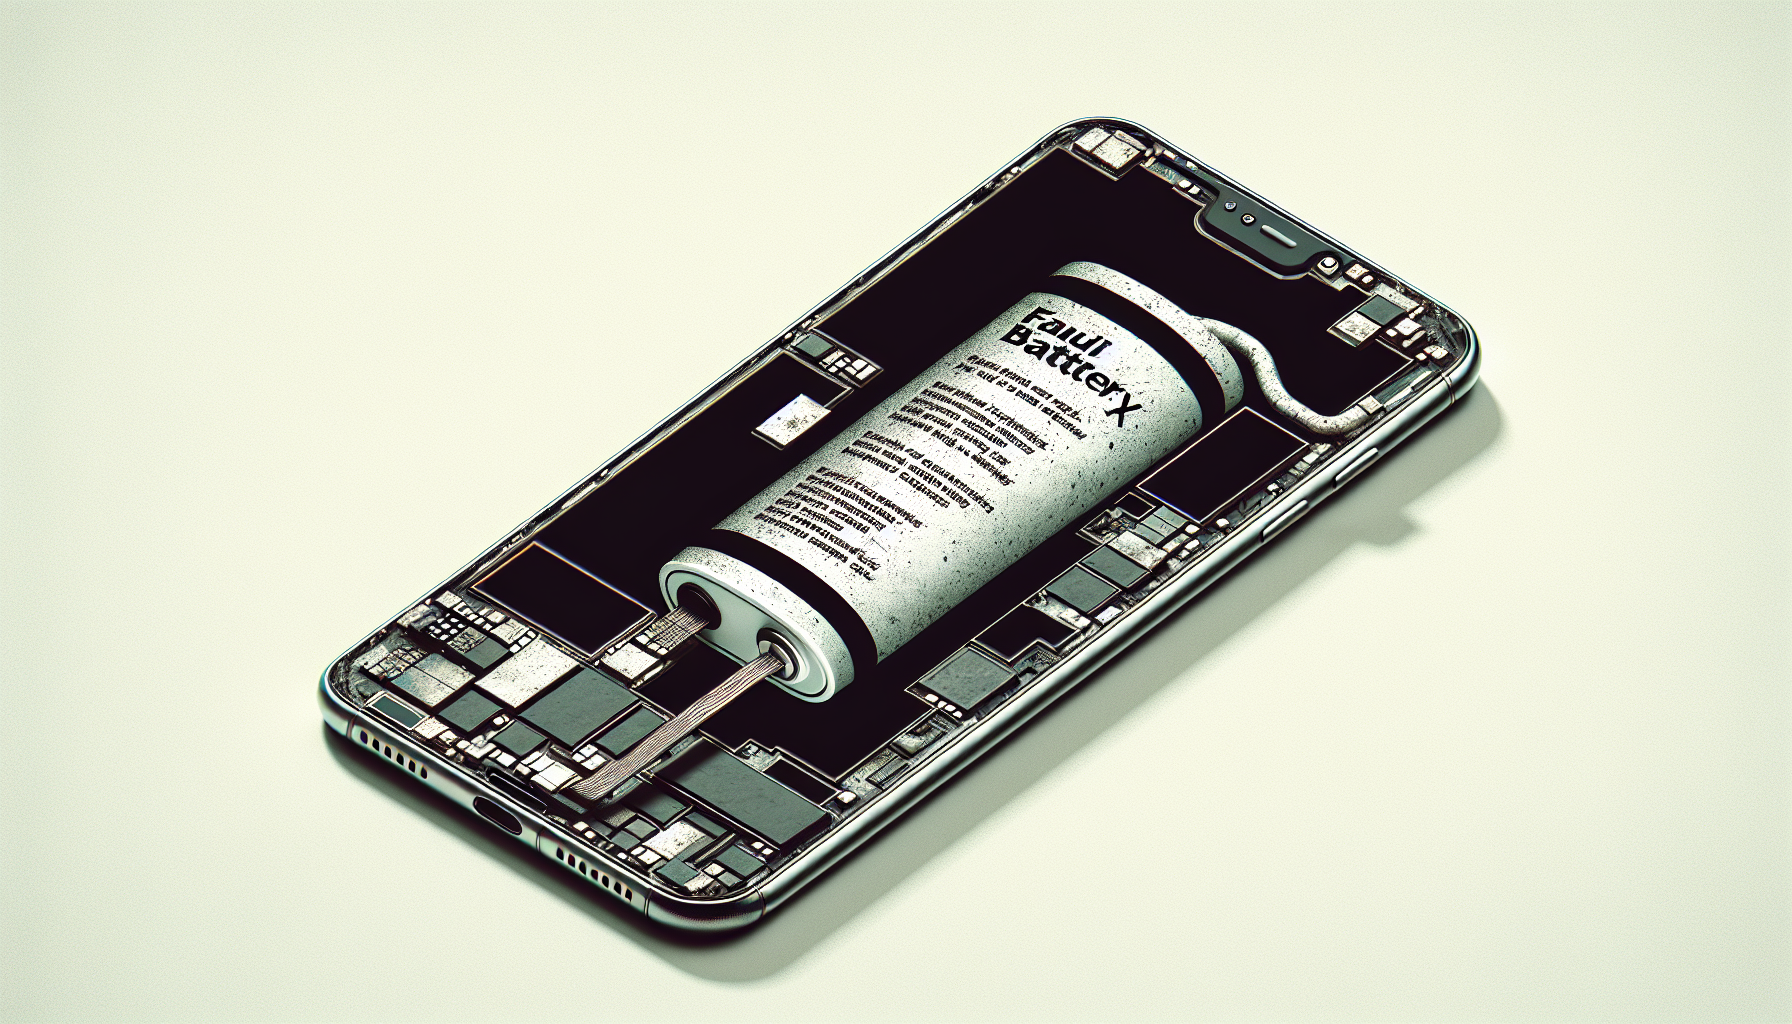 découvrez comment détecter les signes d'une batterie de téléphone portable défectueuse et apprenez comment effectuer une réparation de batterie de téléphone portable efficace.